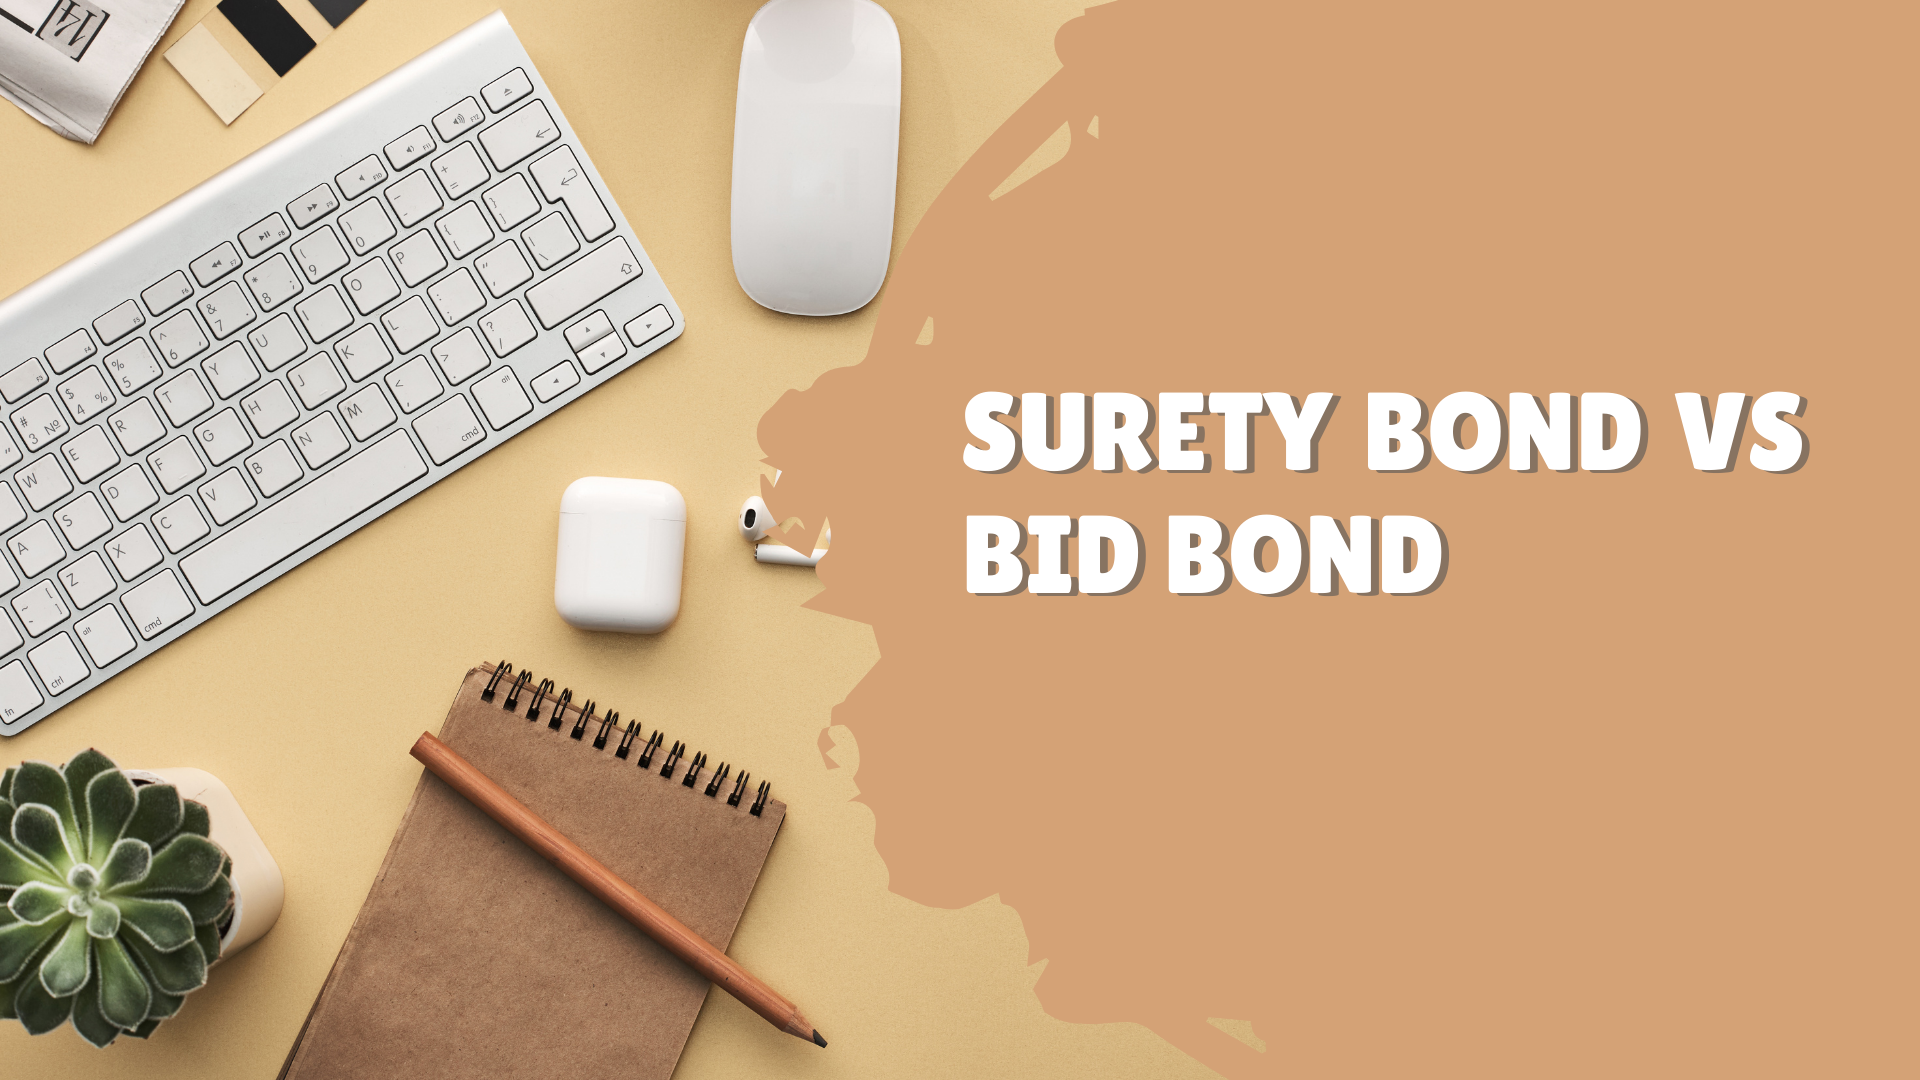 Surety Bond-Surety Bond vs Bid Bond 